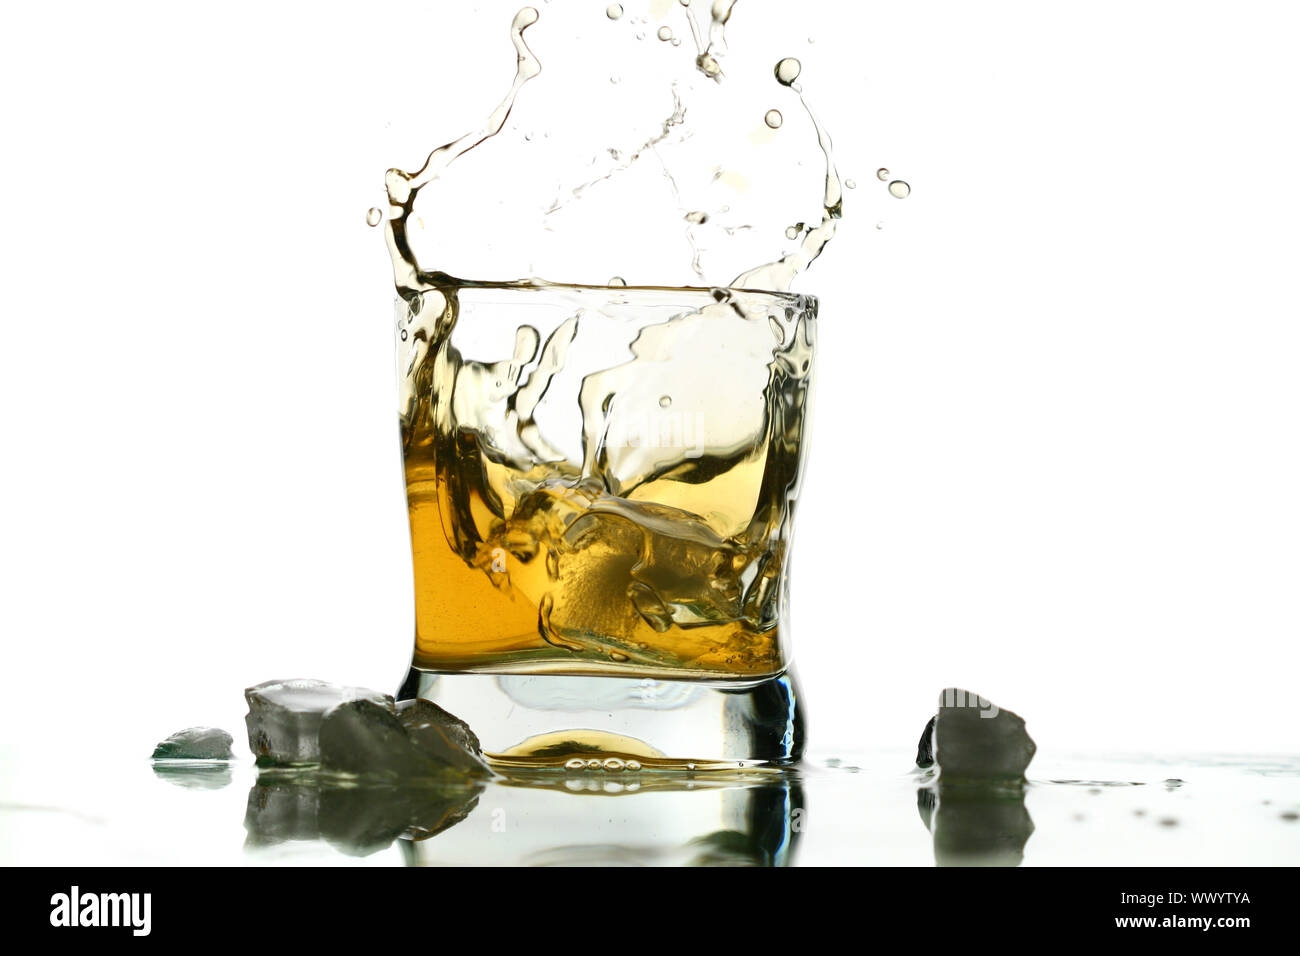 whisky splash alcohol drops isolated on white Stock Photo